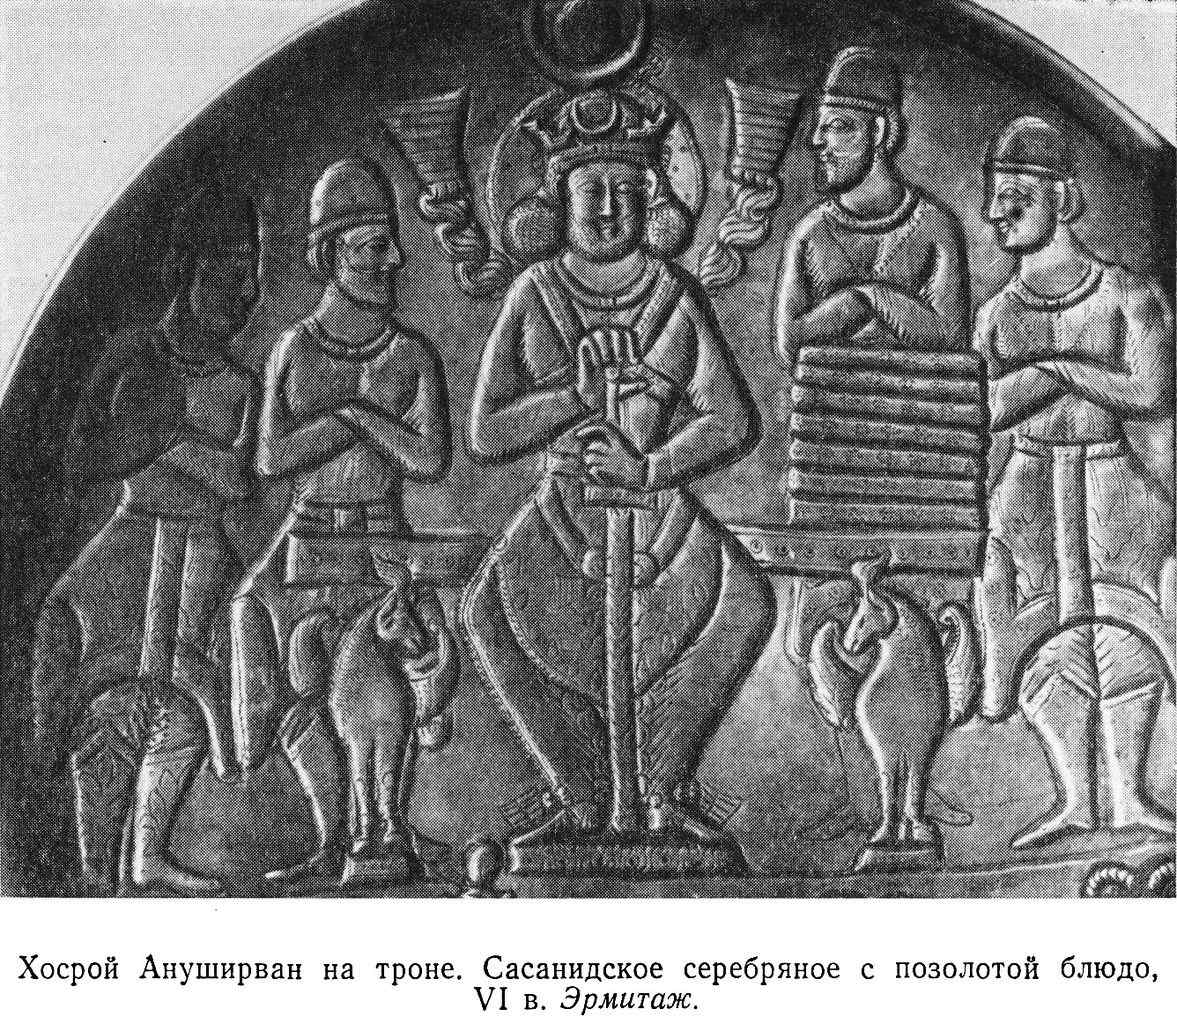 Хосрой Ануширван на троне. Сасанидское серебряное с позолотой блюдо, VI в. Эрмитаж